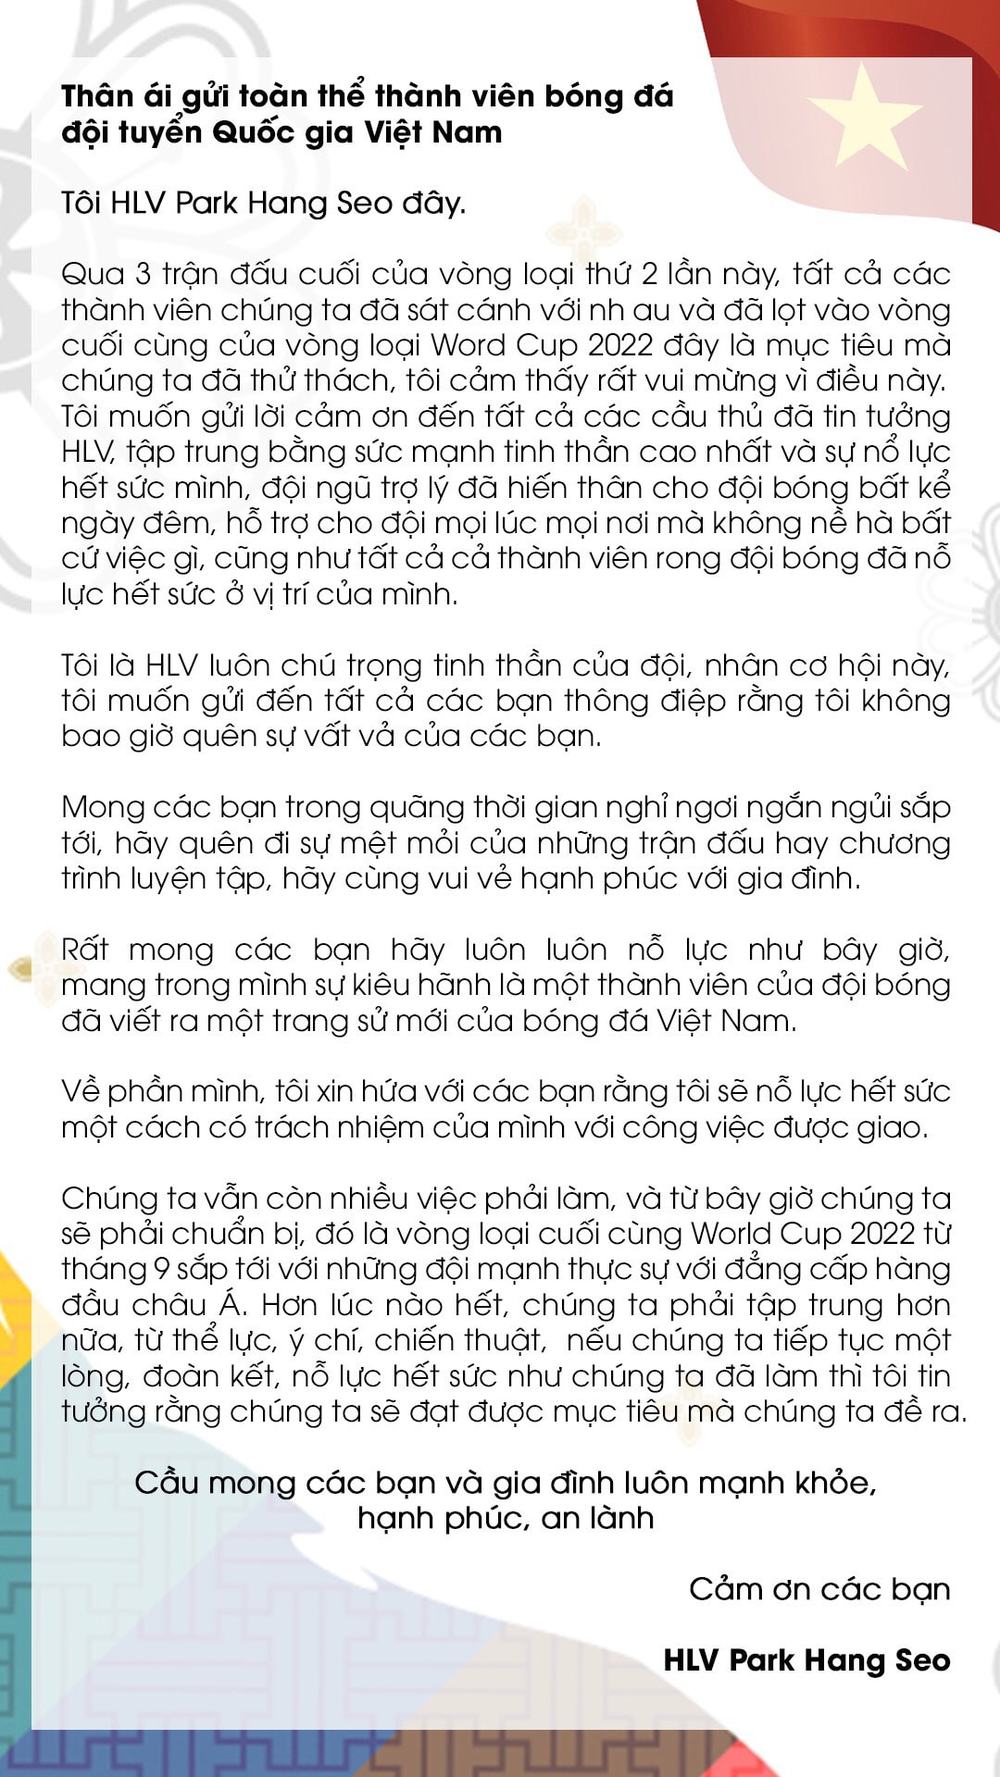 HLV Park Hang Seo gửi tâm thư đến đội tuyển Việt Nam - Ảnh 2